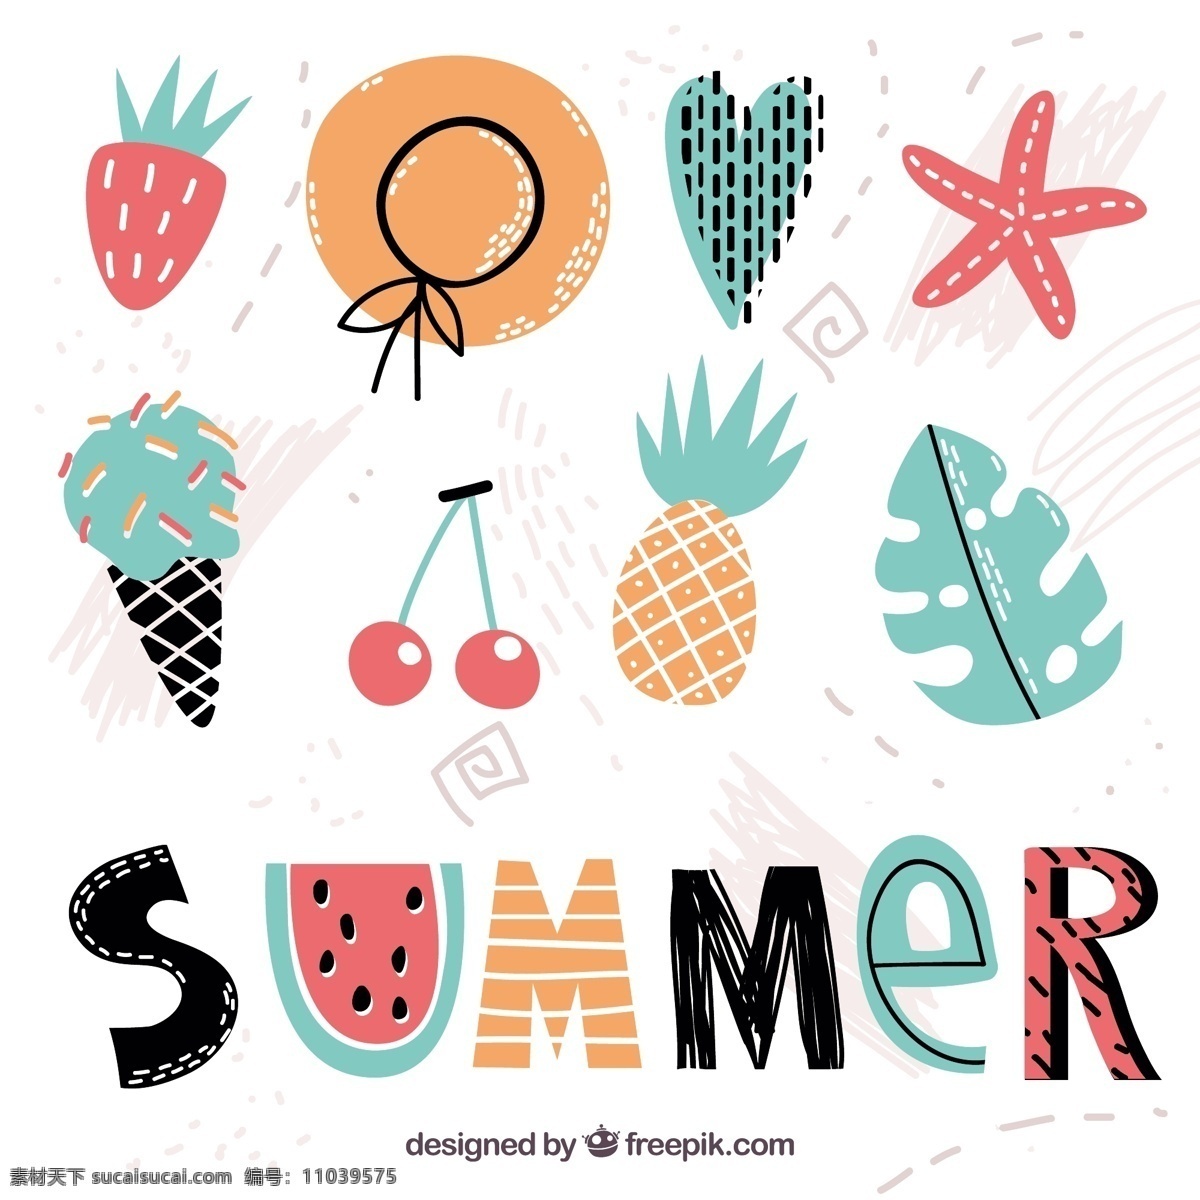 夏季 手绘 要素 多样性 旧货 手 叶 海 海滩 复古 冰淇淋 颜色 假日 冰 帽子 元素 草莓 菠萝 度假 信件 奶油 樱桃